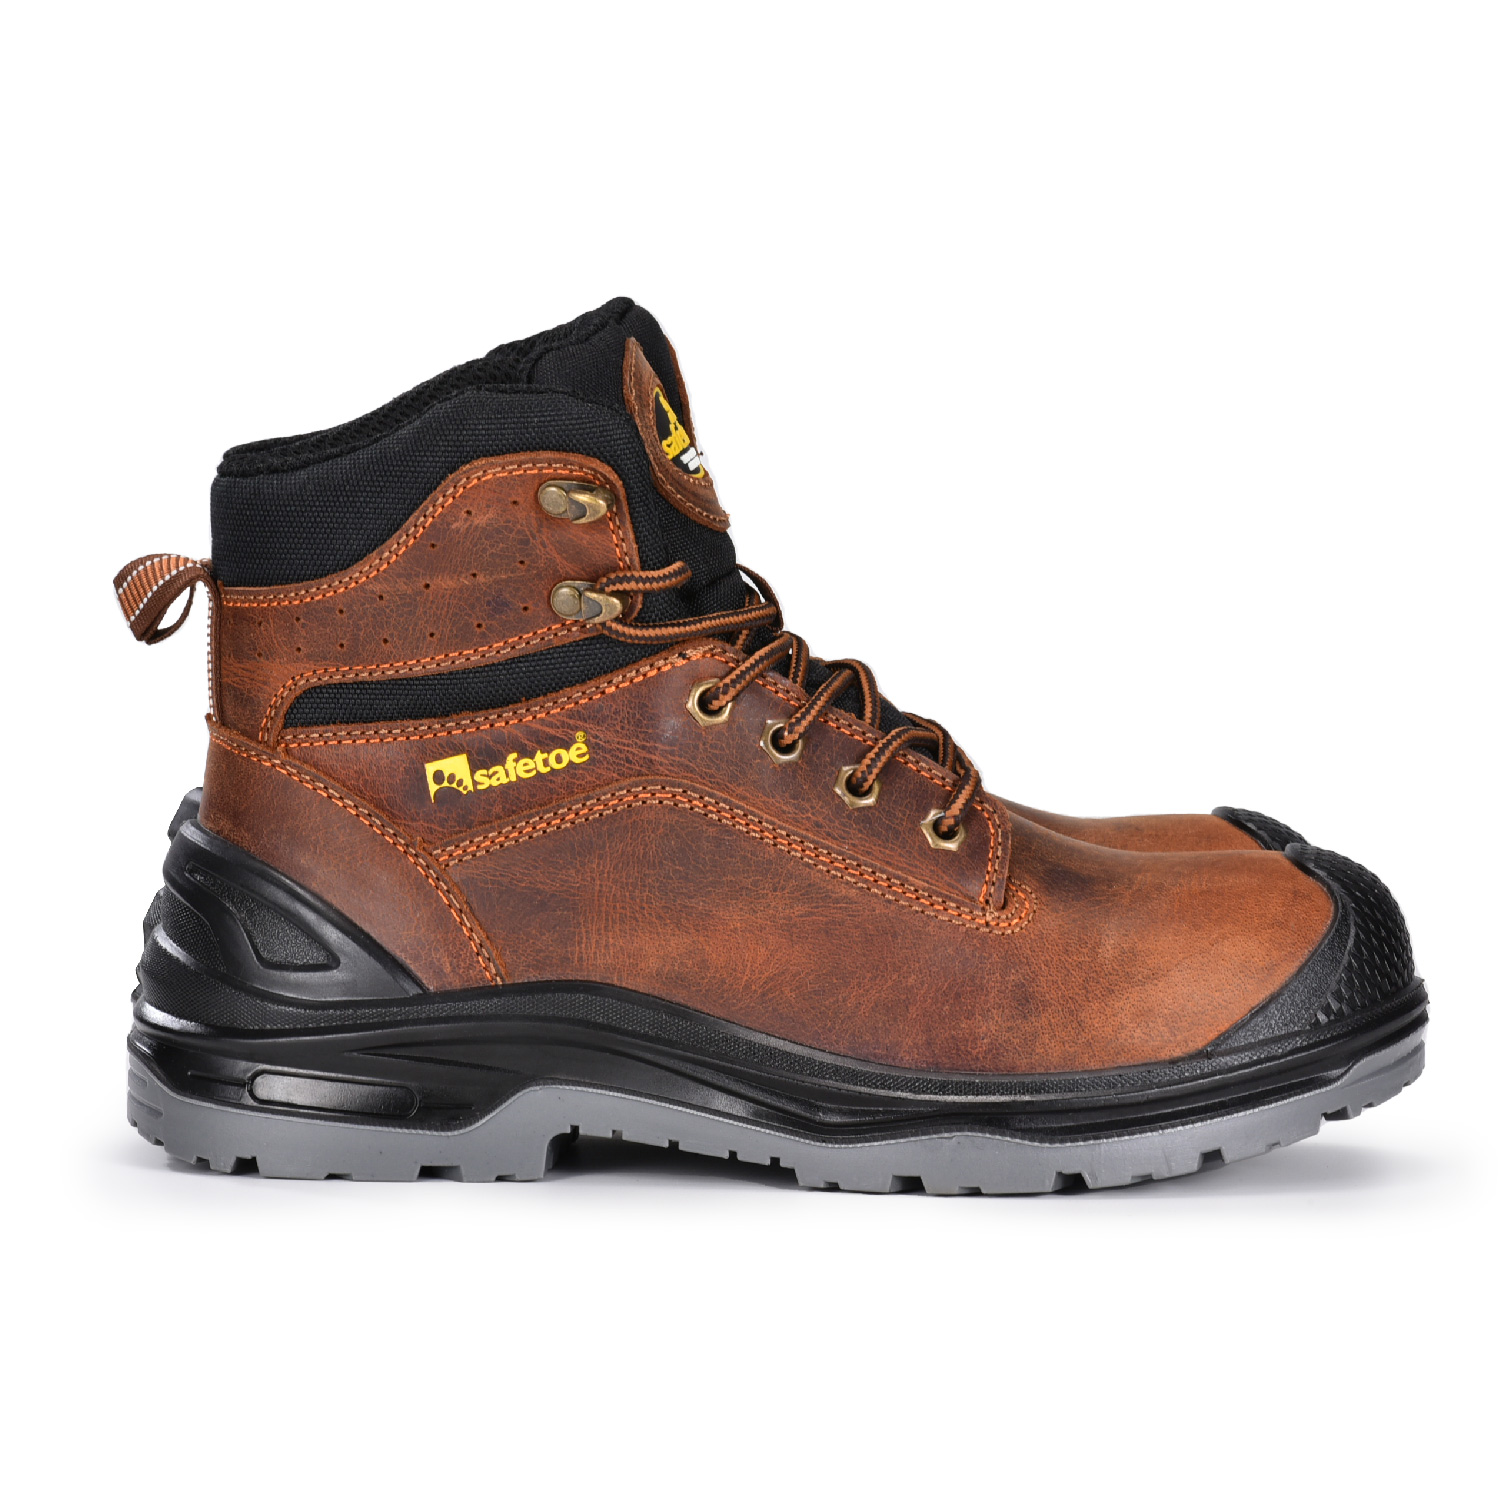 Heavy Duty Waterproof Mechanic Work Boots with Composite Toecap for Men M-8556